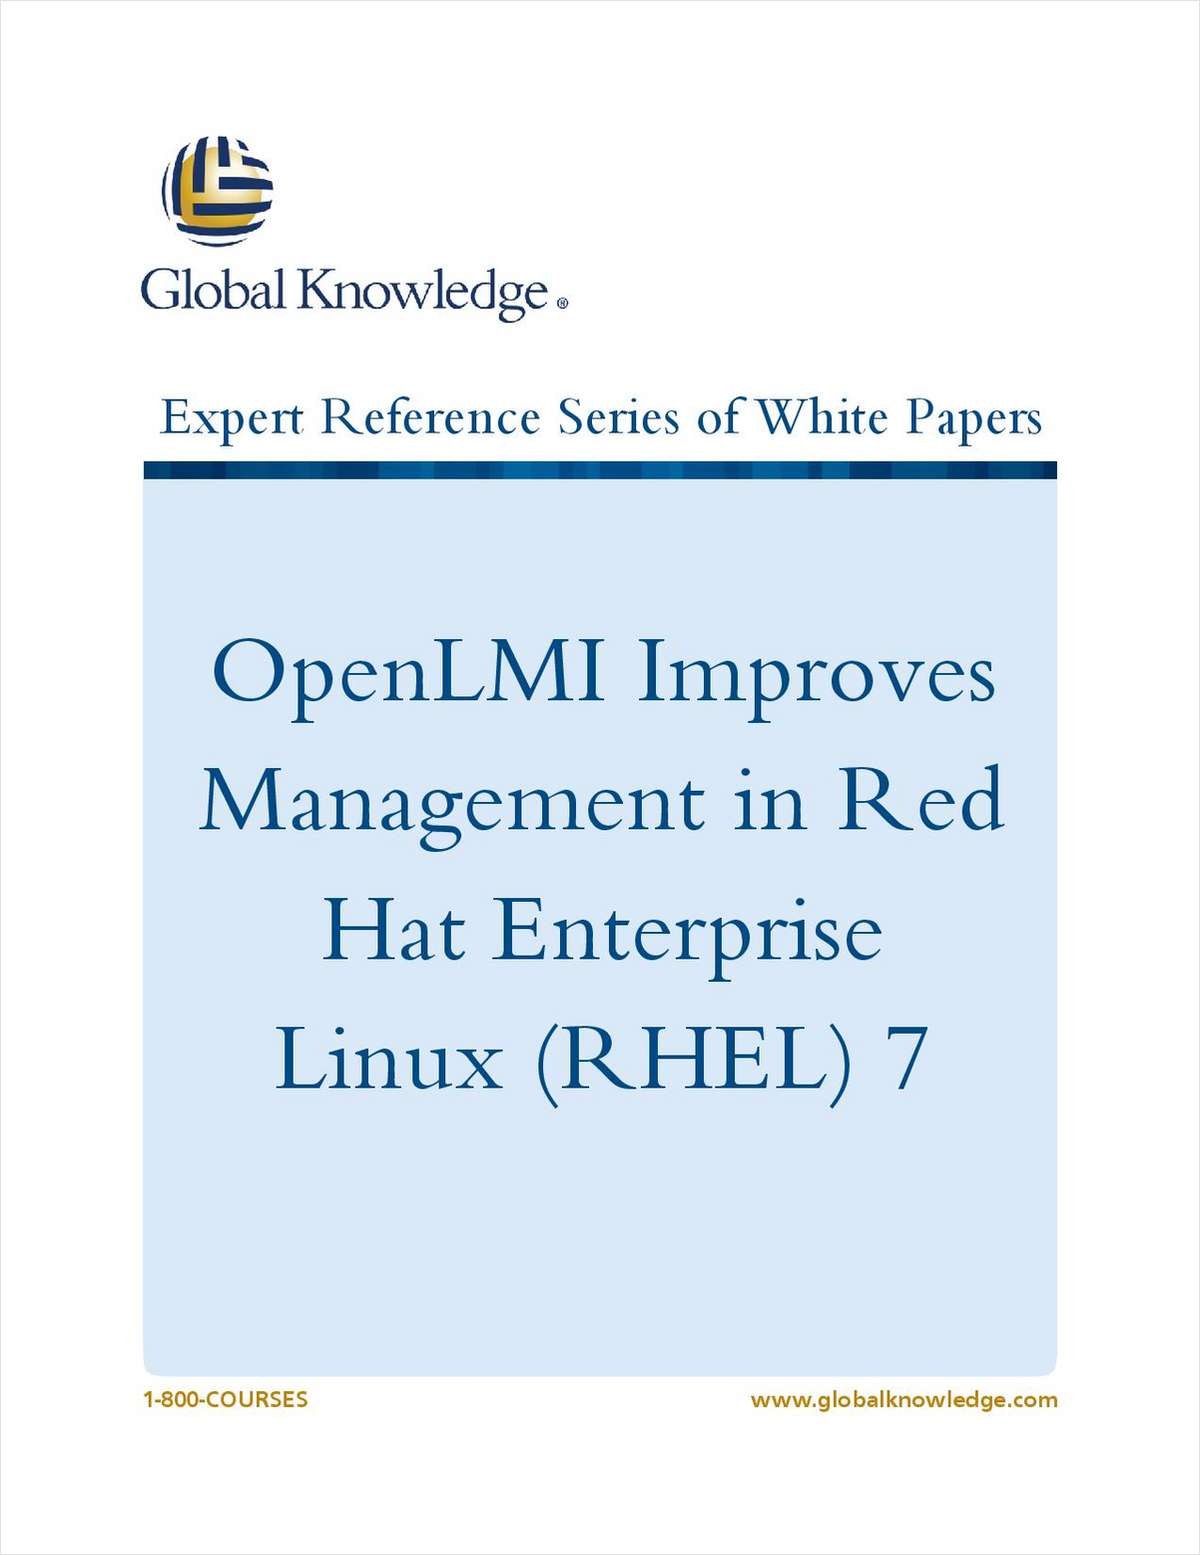 OpenLMI Improves Management in Red Hat Enterprise Linux (RHEL) 7